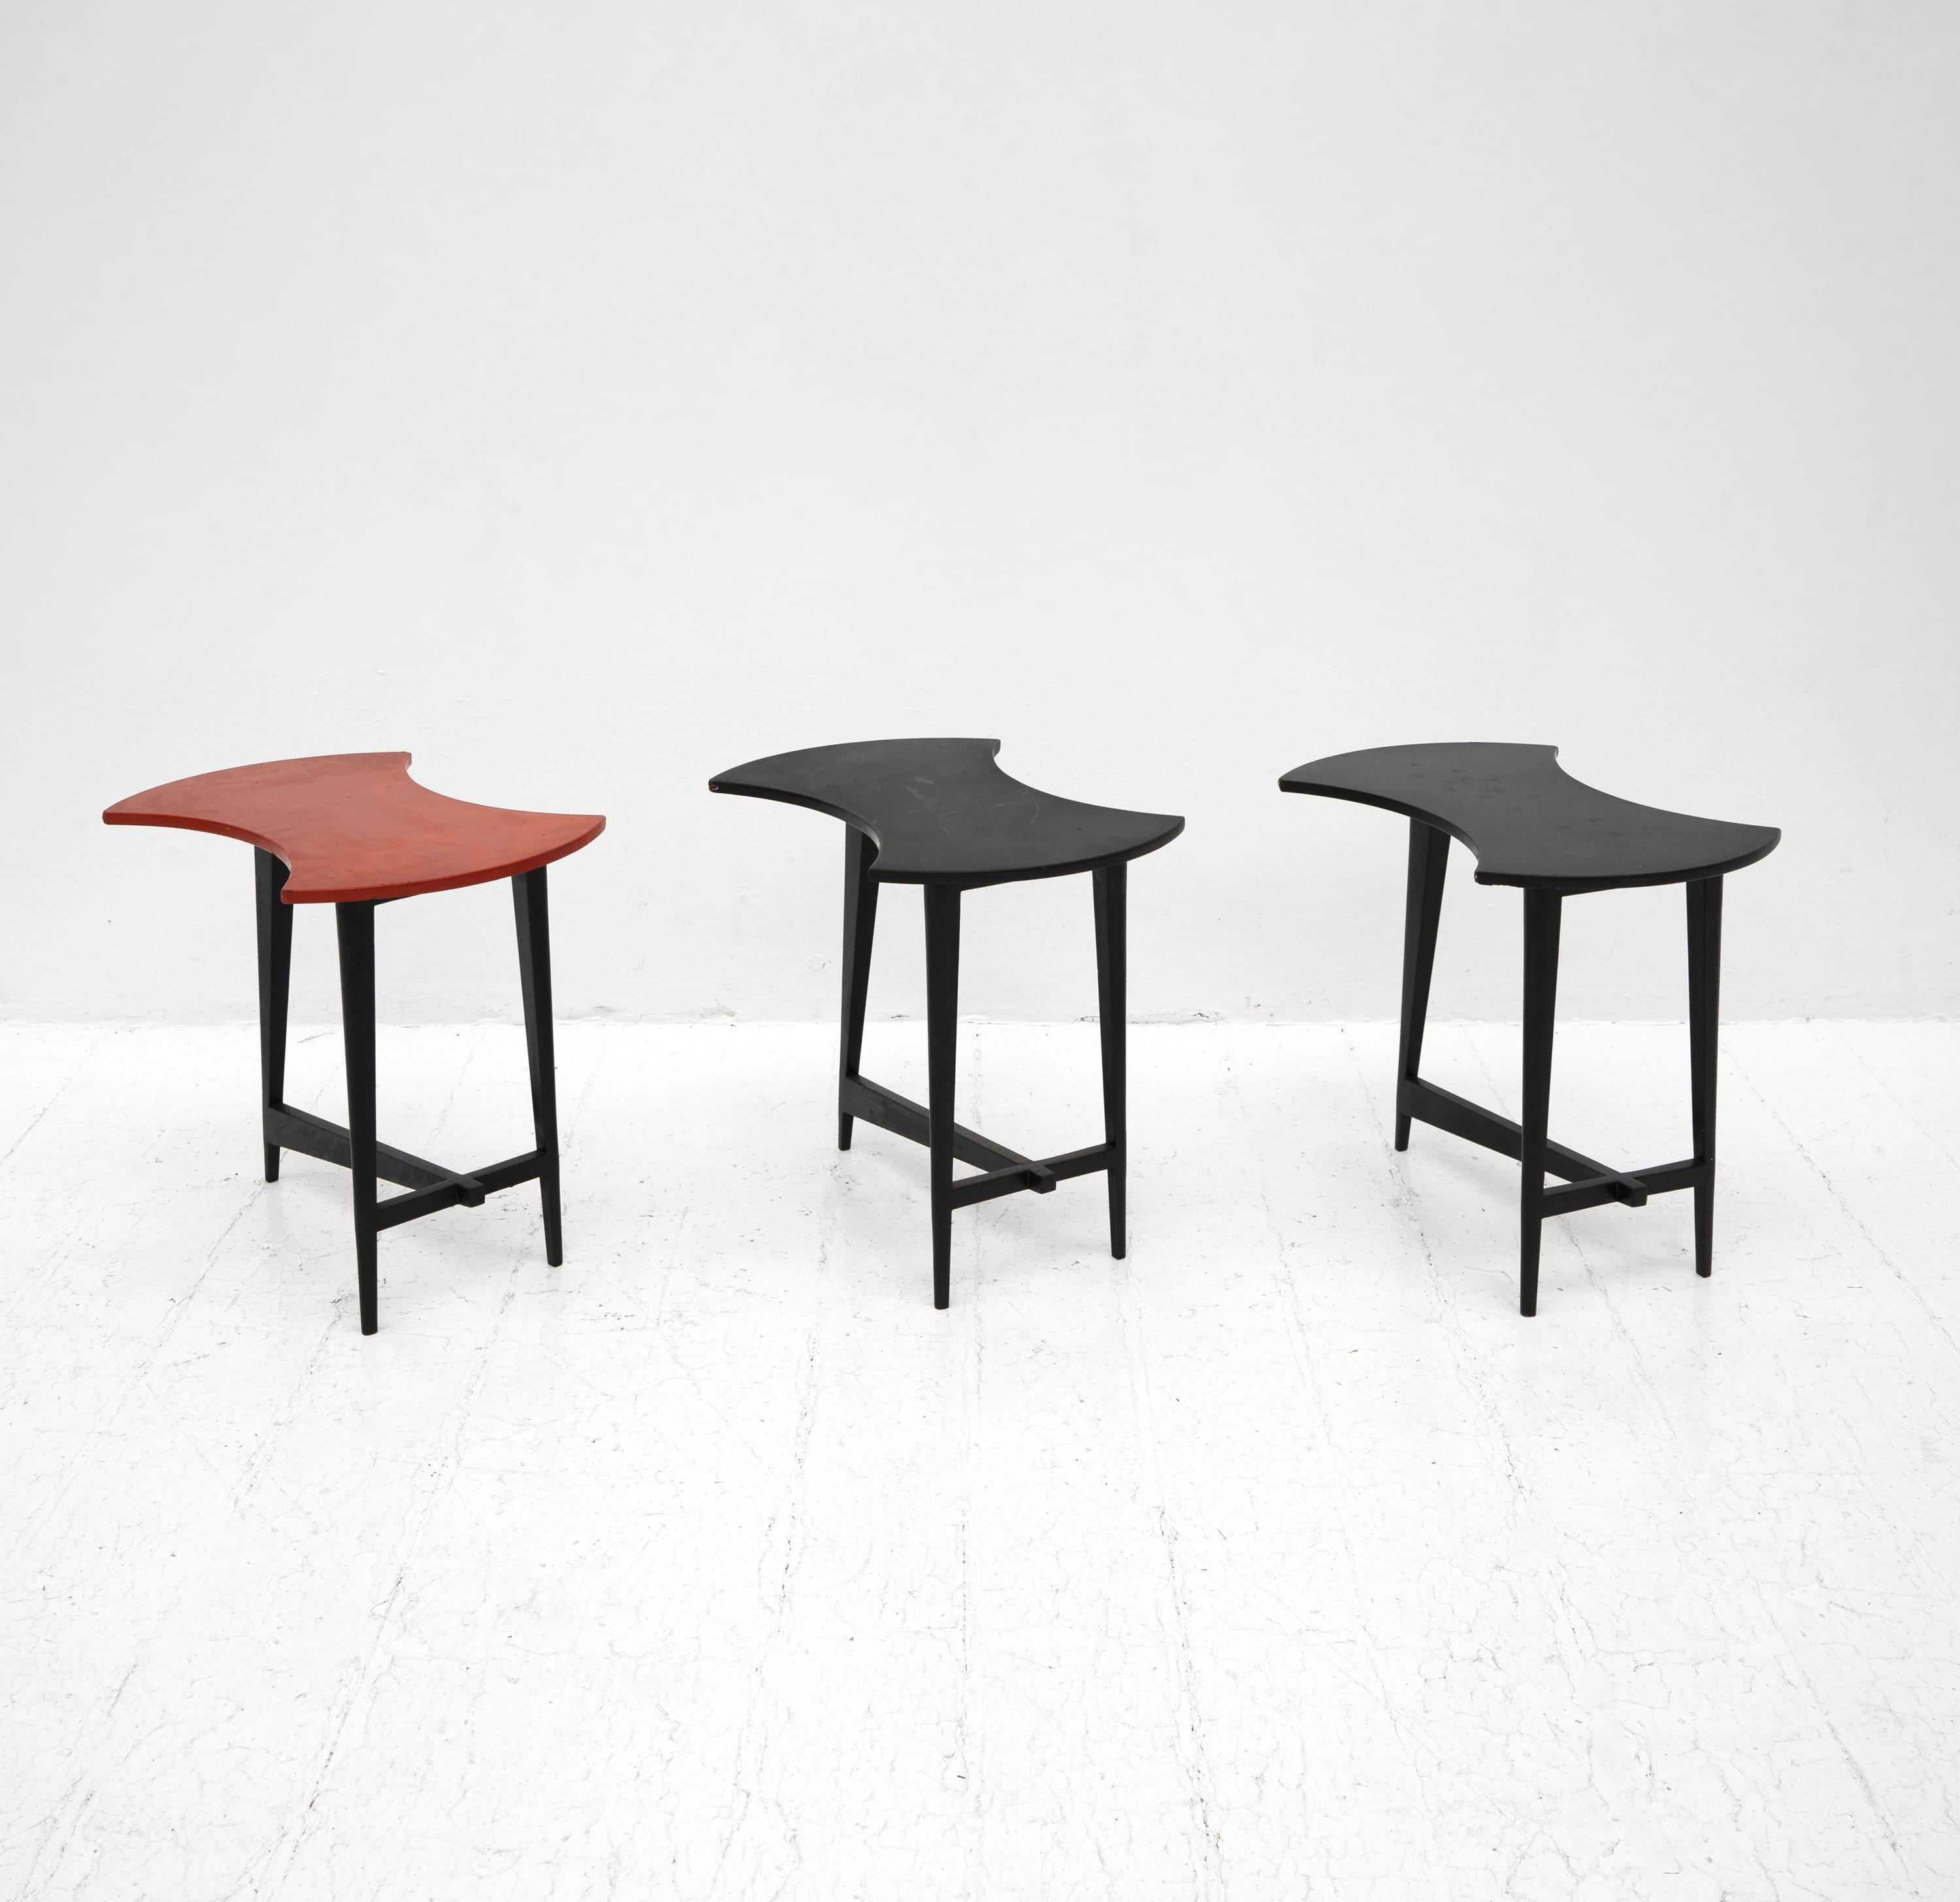 Tabourets / tables d'appoint en bois vintage conçus par l'artiste vietnamien Thanh-Ley (1919-2003). 

Il y a 3 tabourets disponibles, le prix est par tabouret.

Dimensions (cm, environ) :
Hauteur : 42
Largeur : 32
Profondeur : 35

Condit : Petites